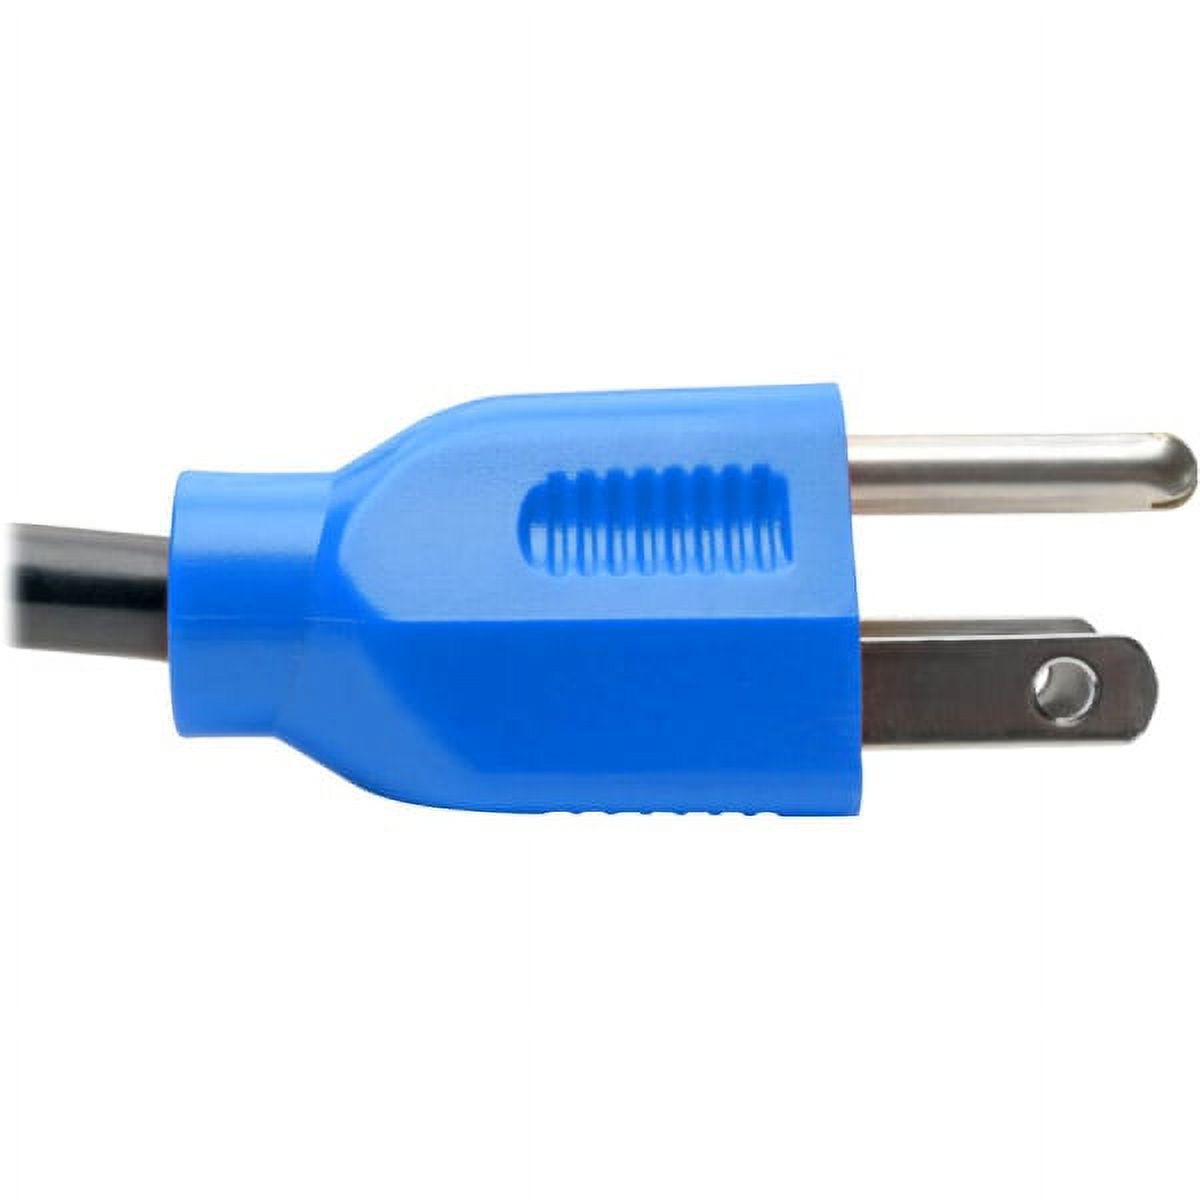 Tripp Lite P006-004-BL 18 AWG NEMA 5-15P to IEC-320-C13 Power Cord, Blue, 4' - image 3 of 4